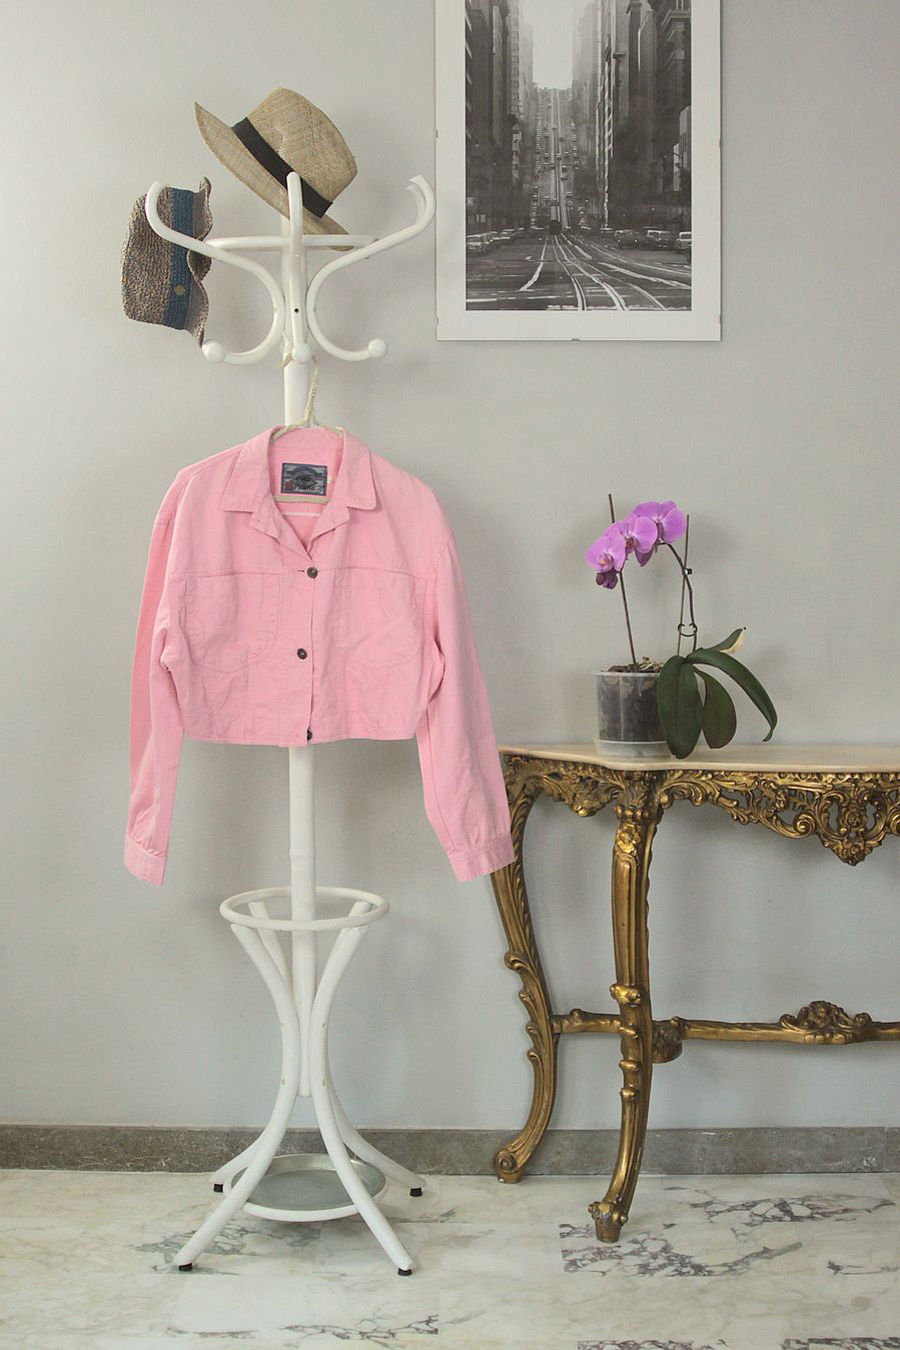 Short pink jacket